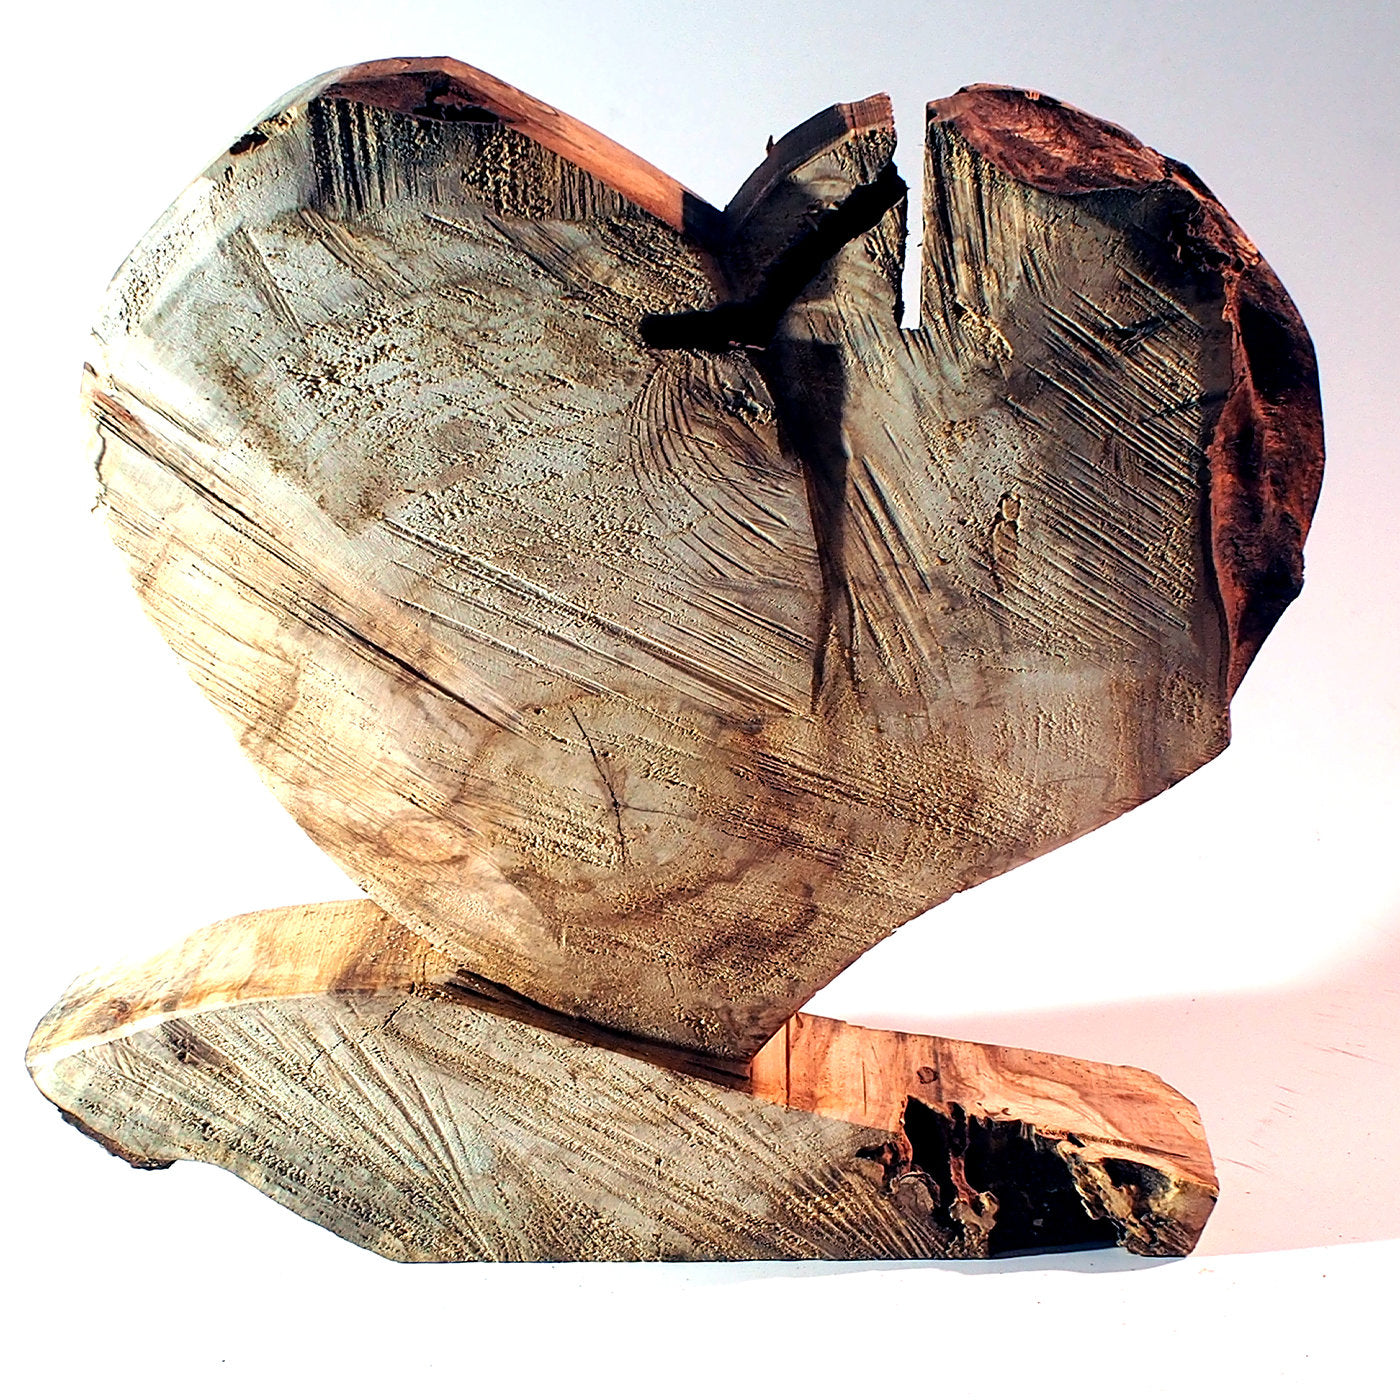 Poplar Heart Essenze di Cuore Collection - Alternative view 1